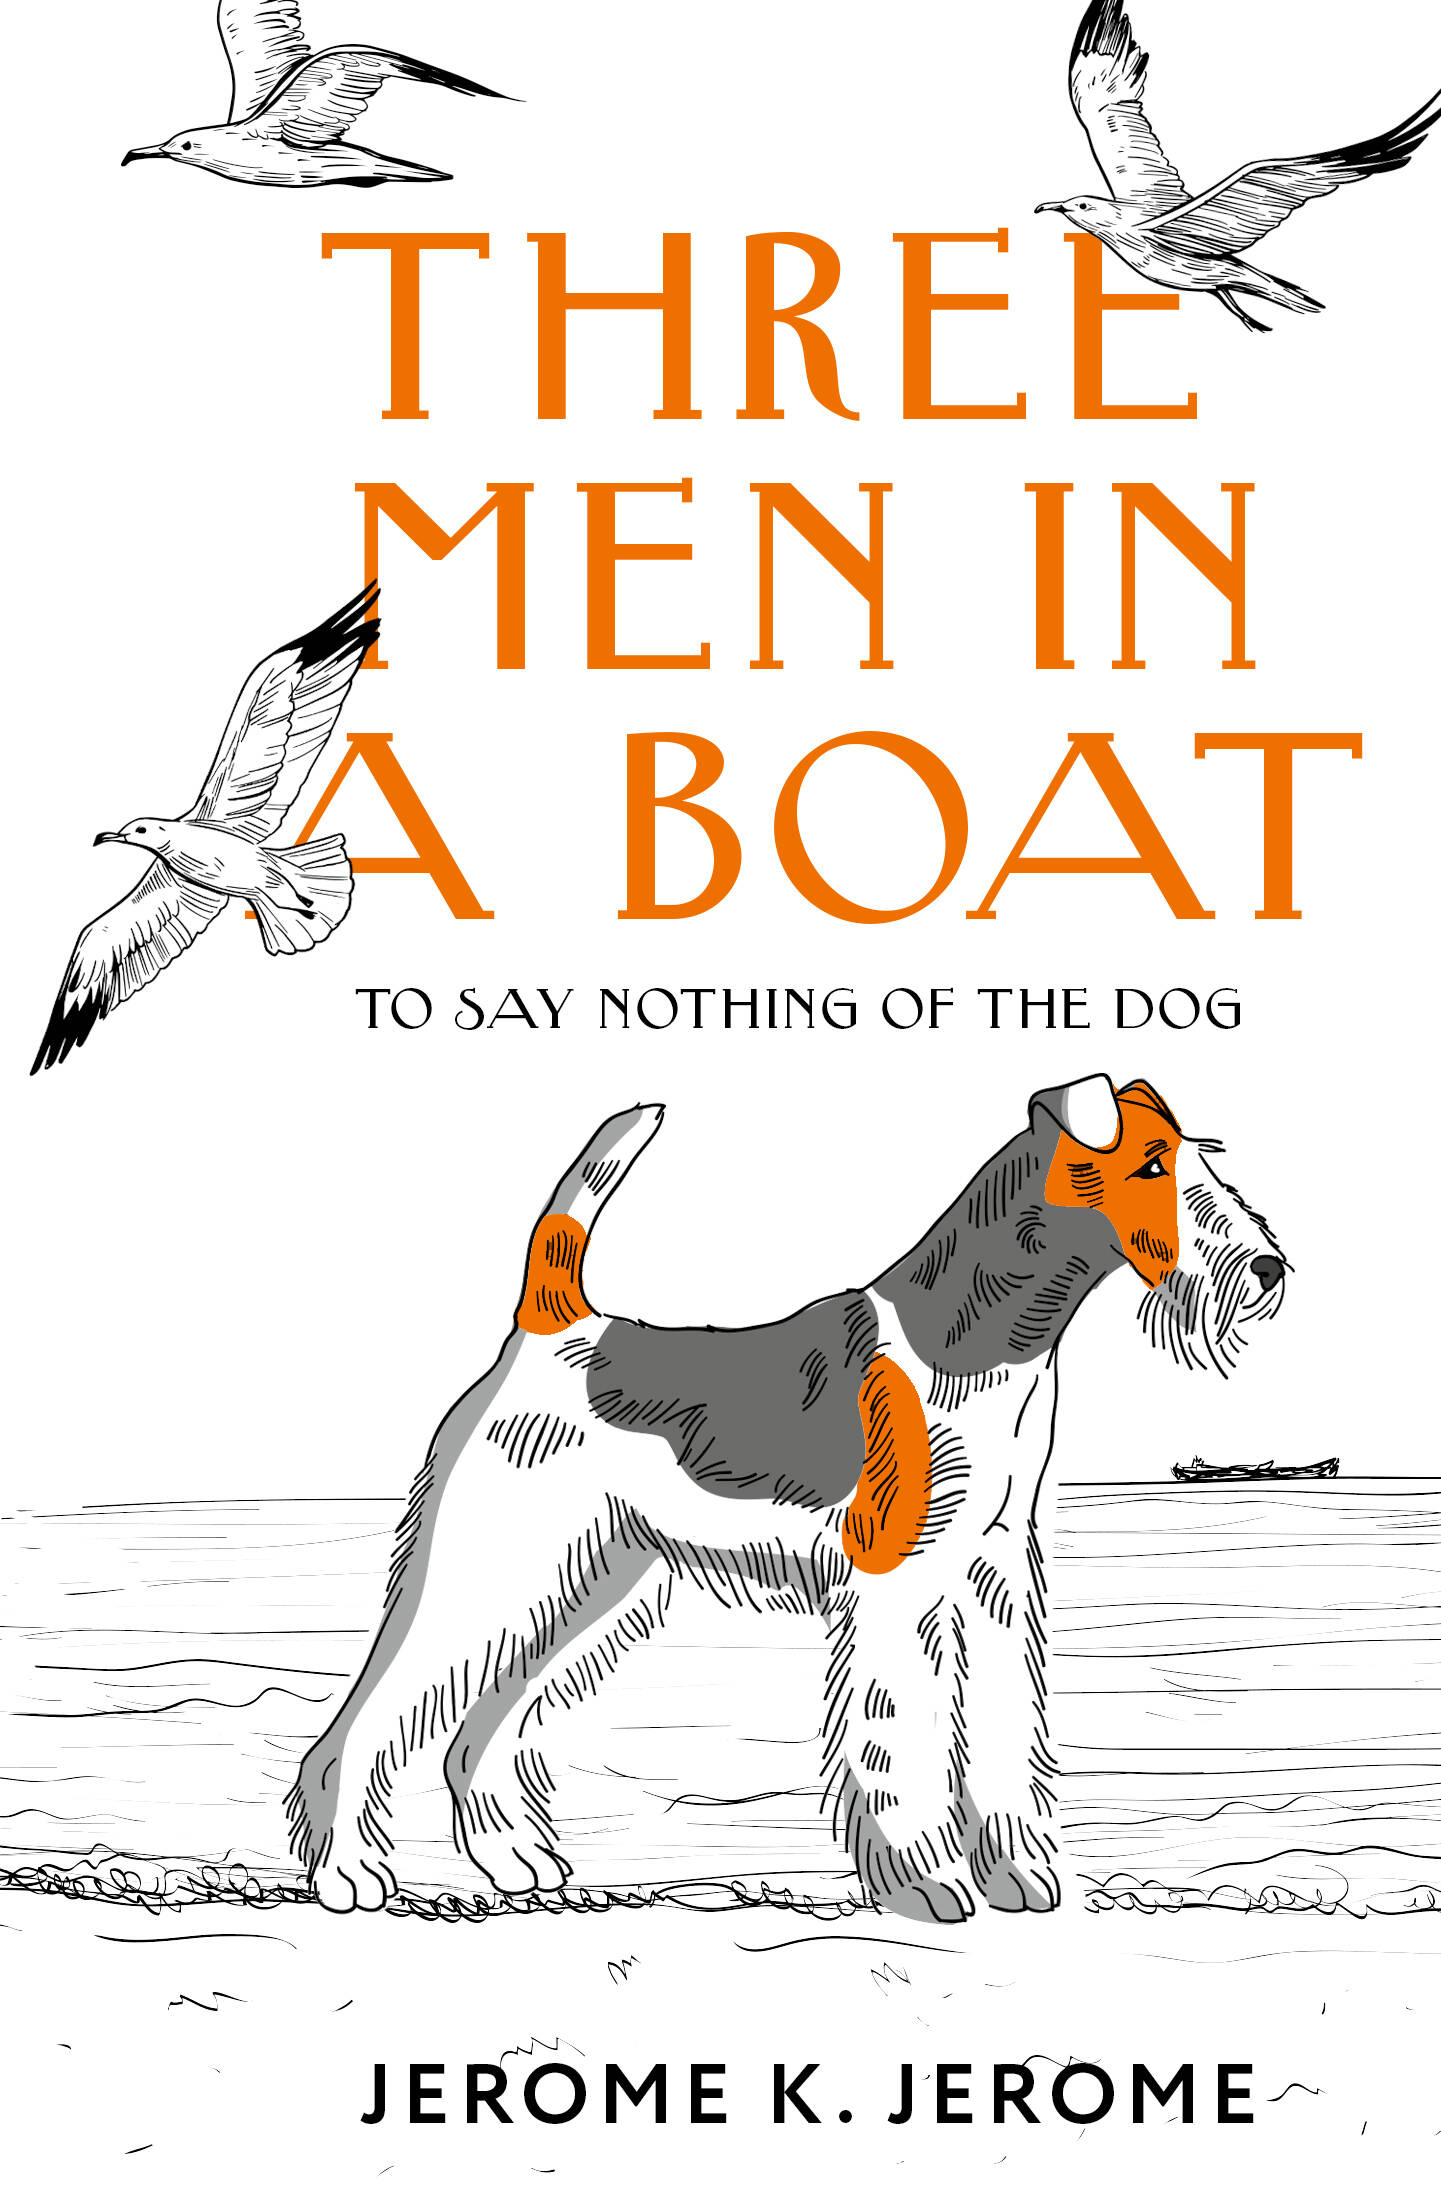 Джером Джером Клапка Three Men in a Boat (To say Nothing of the Dog) джером джером клапка three men in a boat зарклчитвориг jerome на англ яз